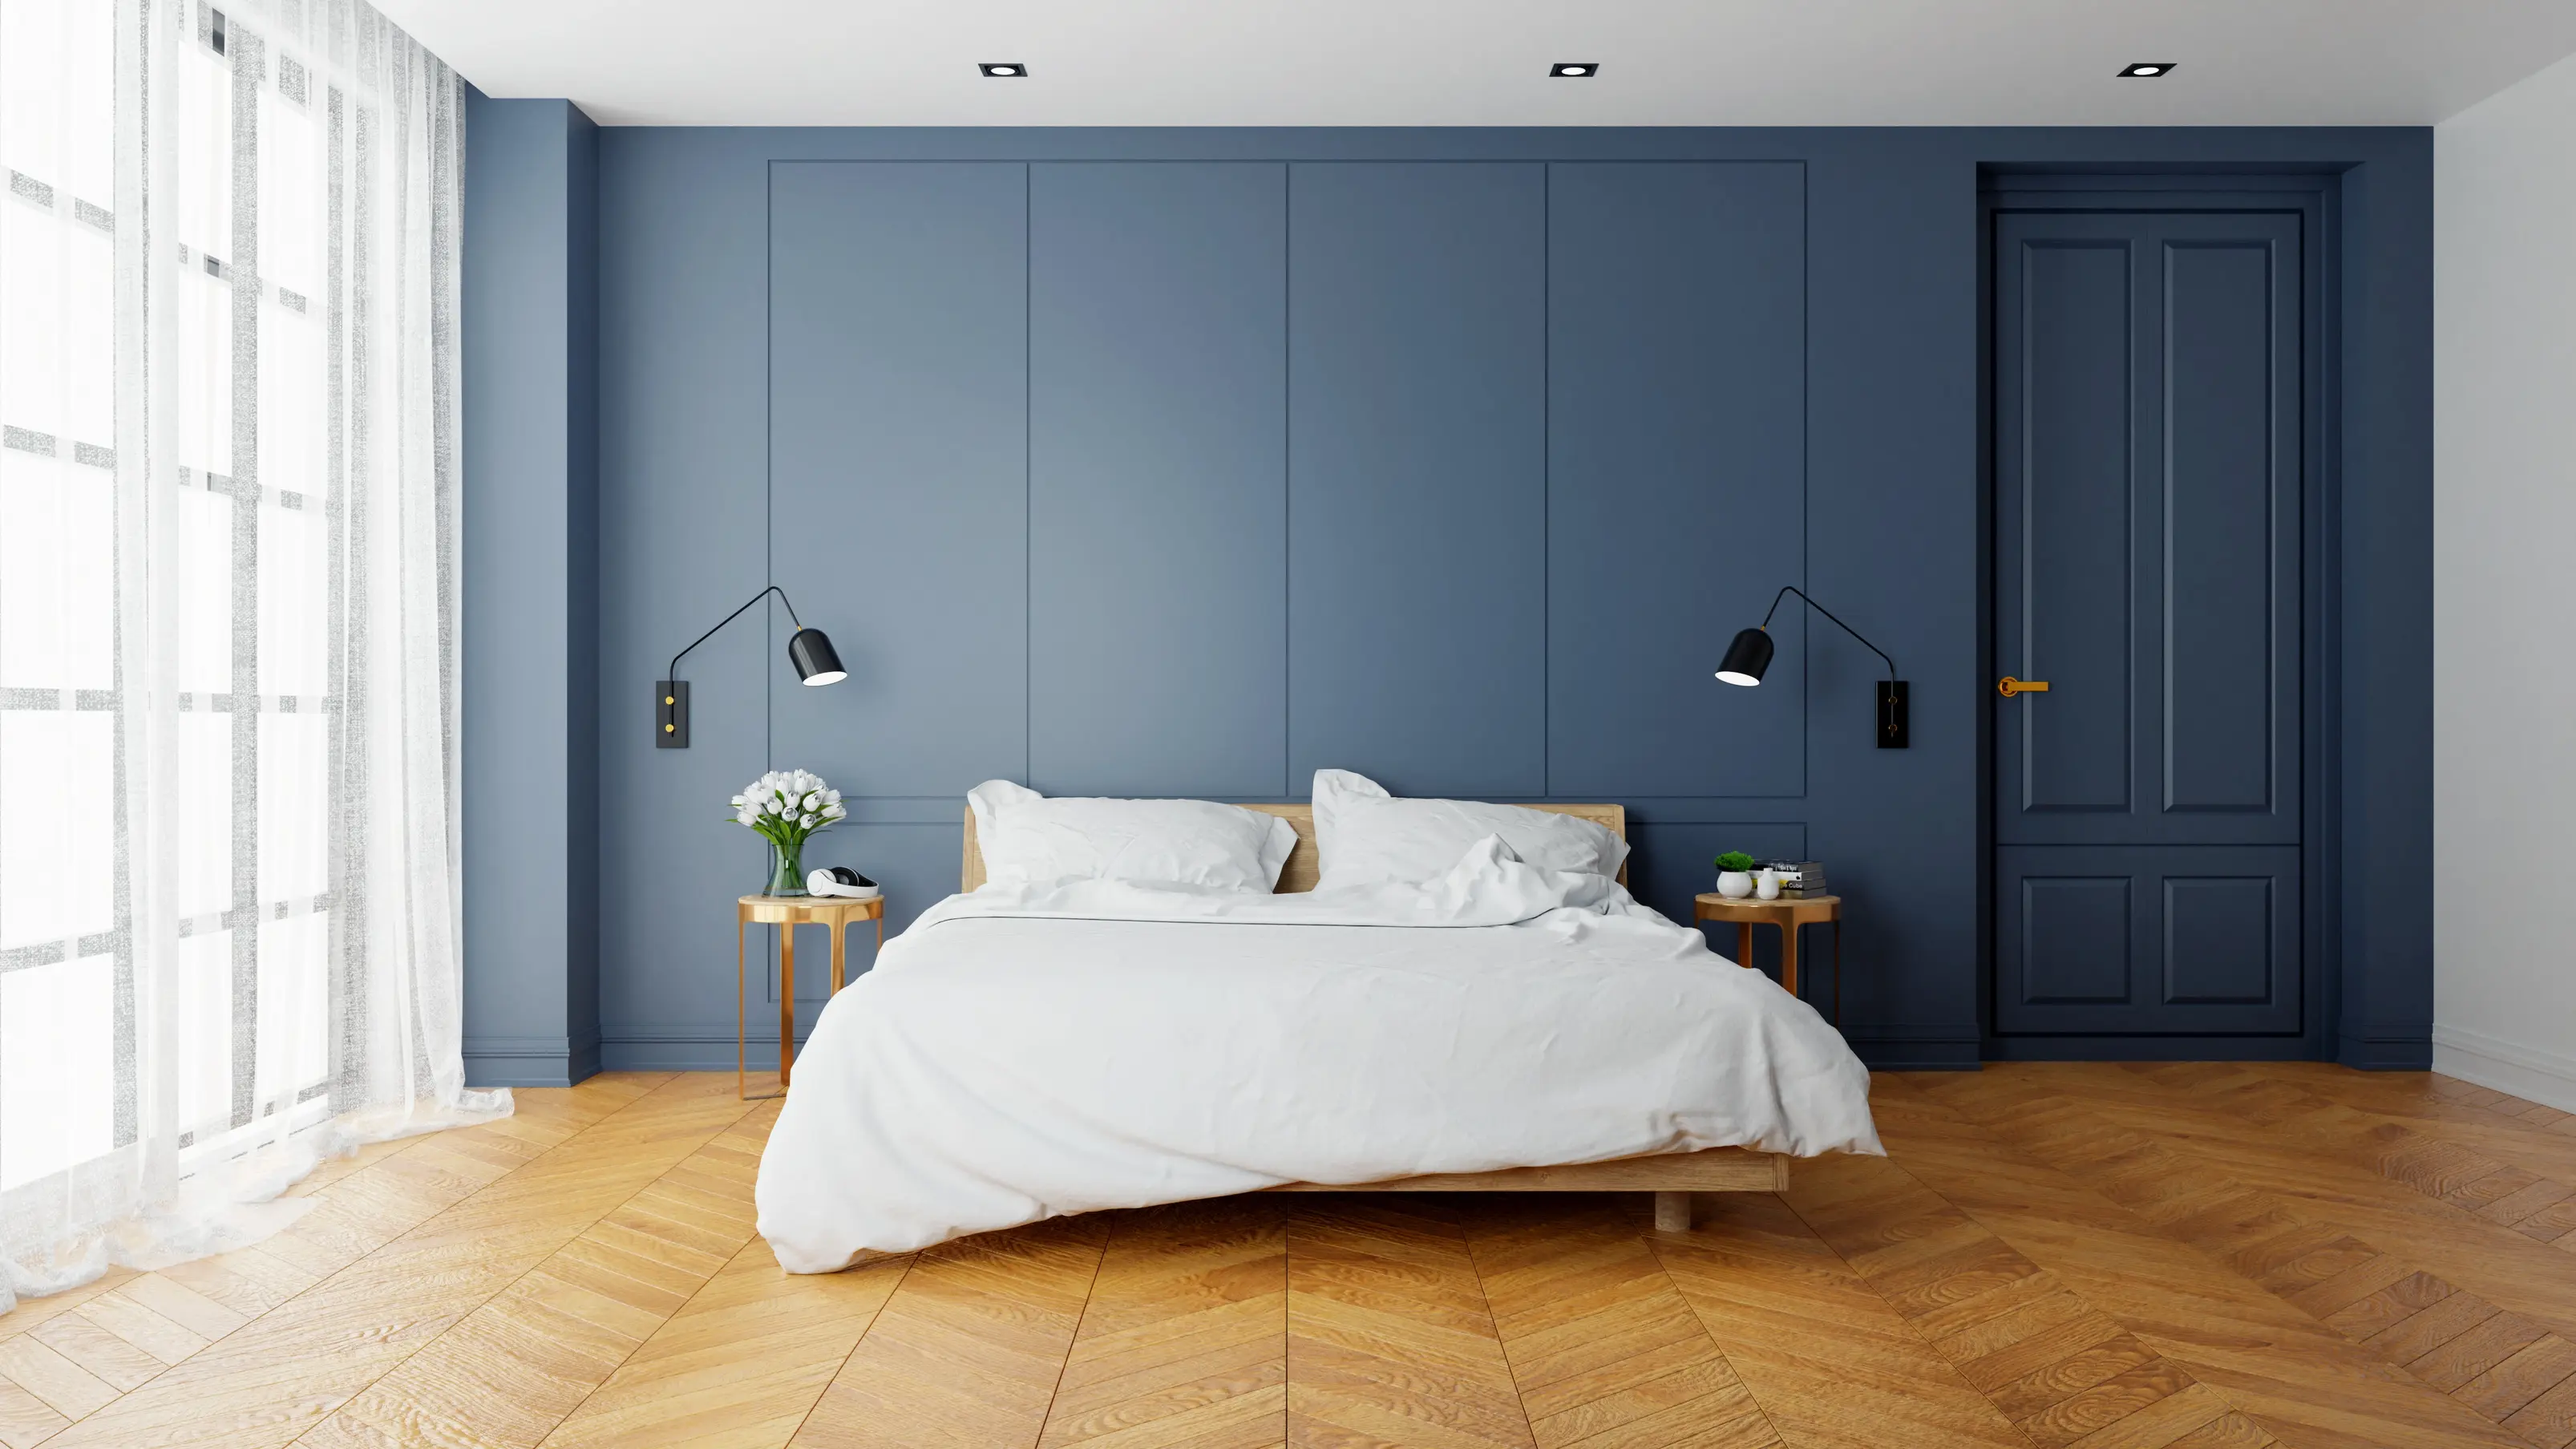 Sypialnia w kolorze niebieskim z niebieską ścianą, styl minimalistyczny. Element charakterystyczny: niebieska ściana